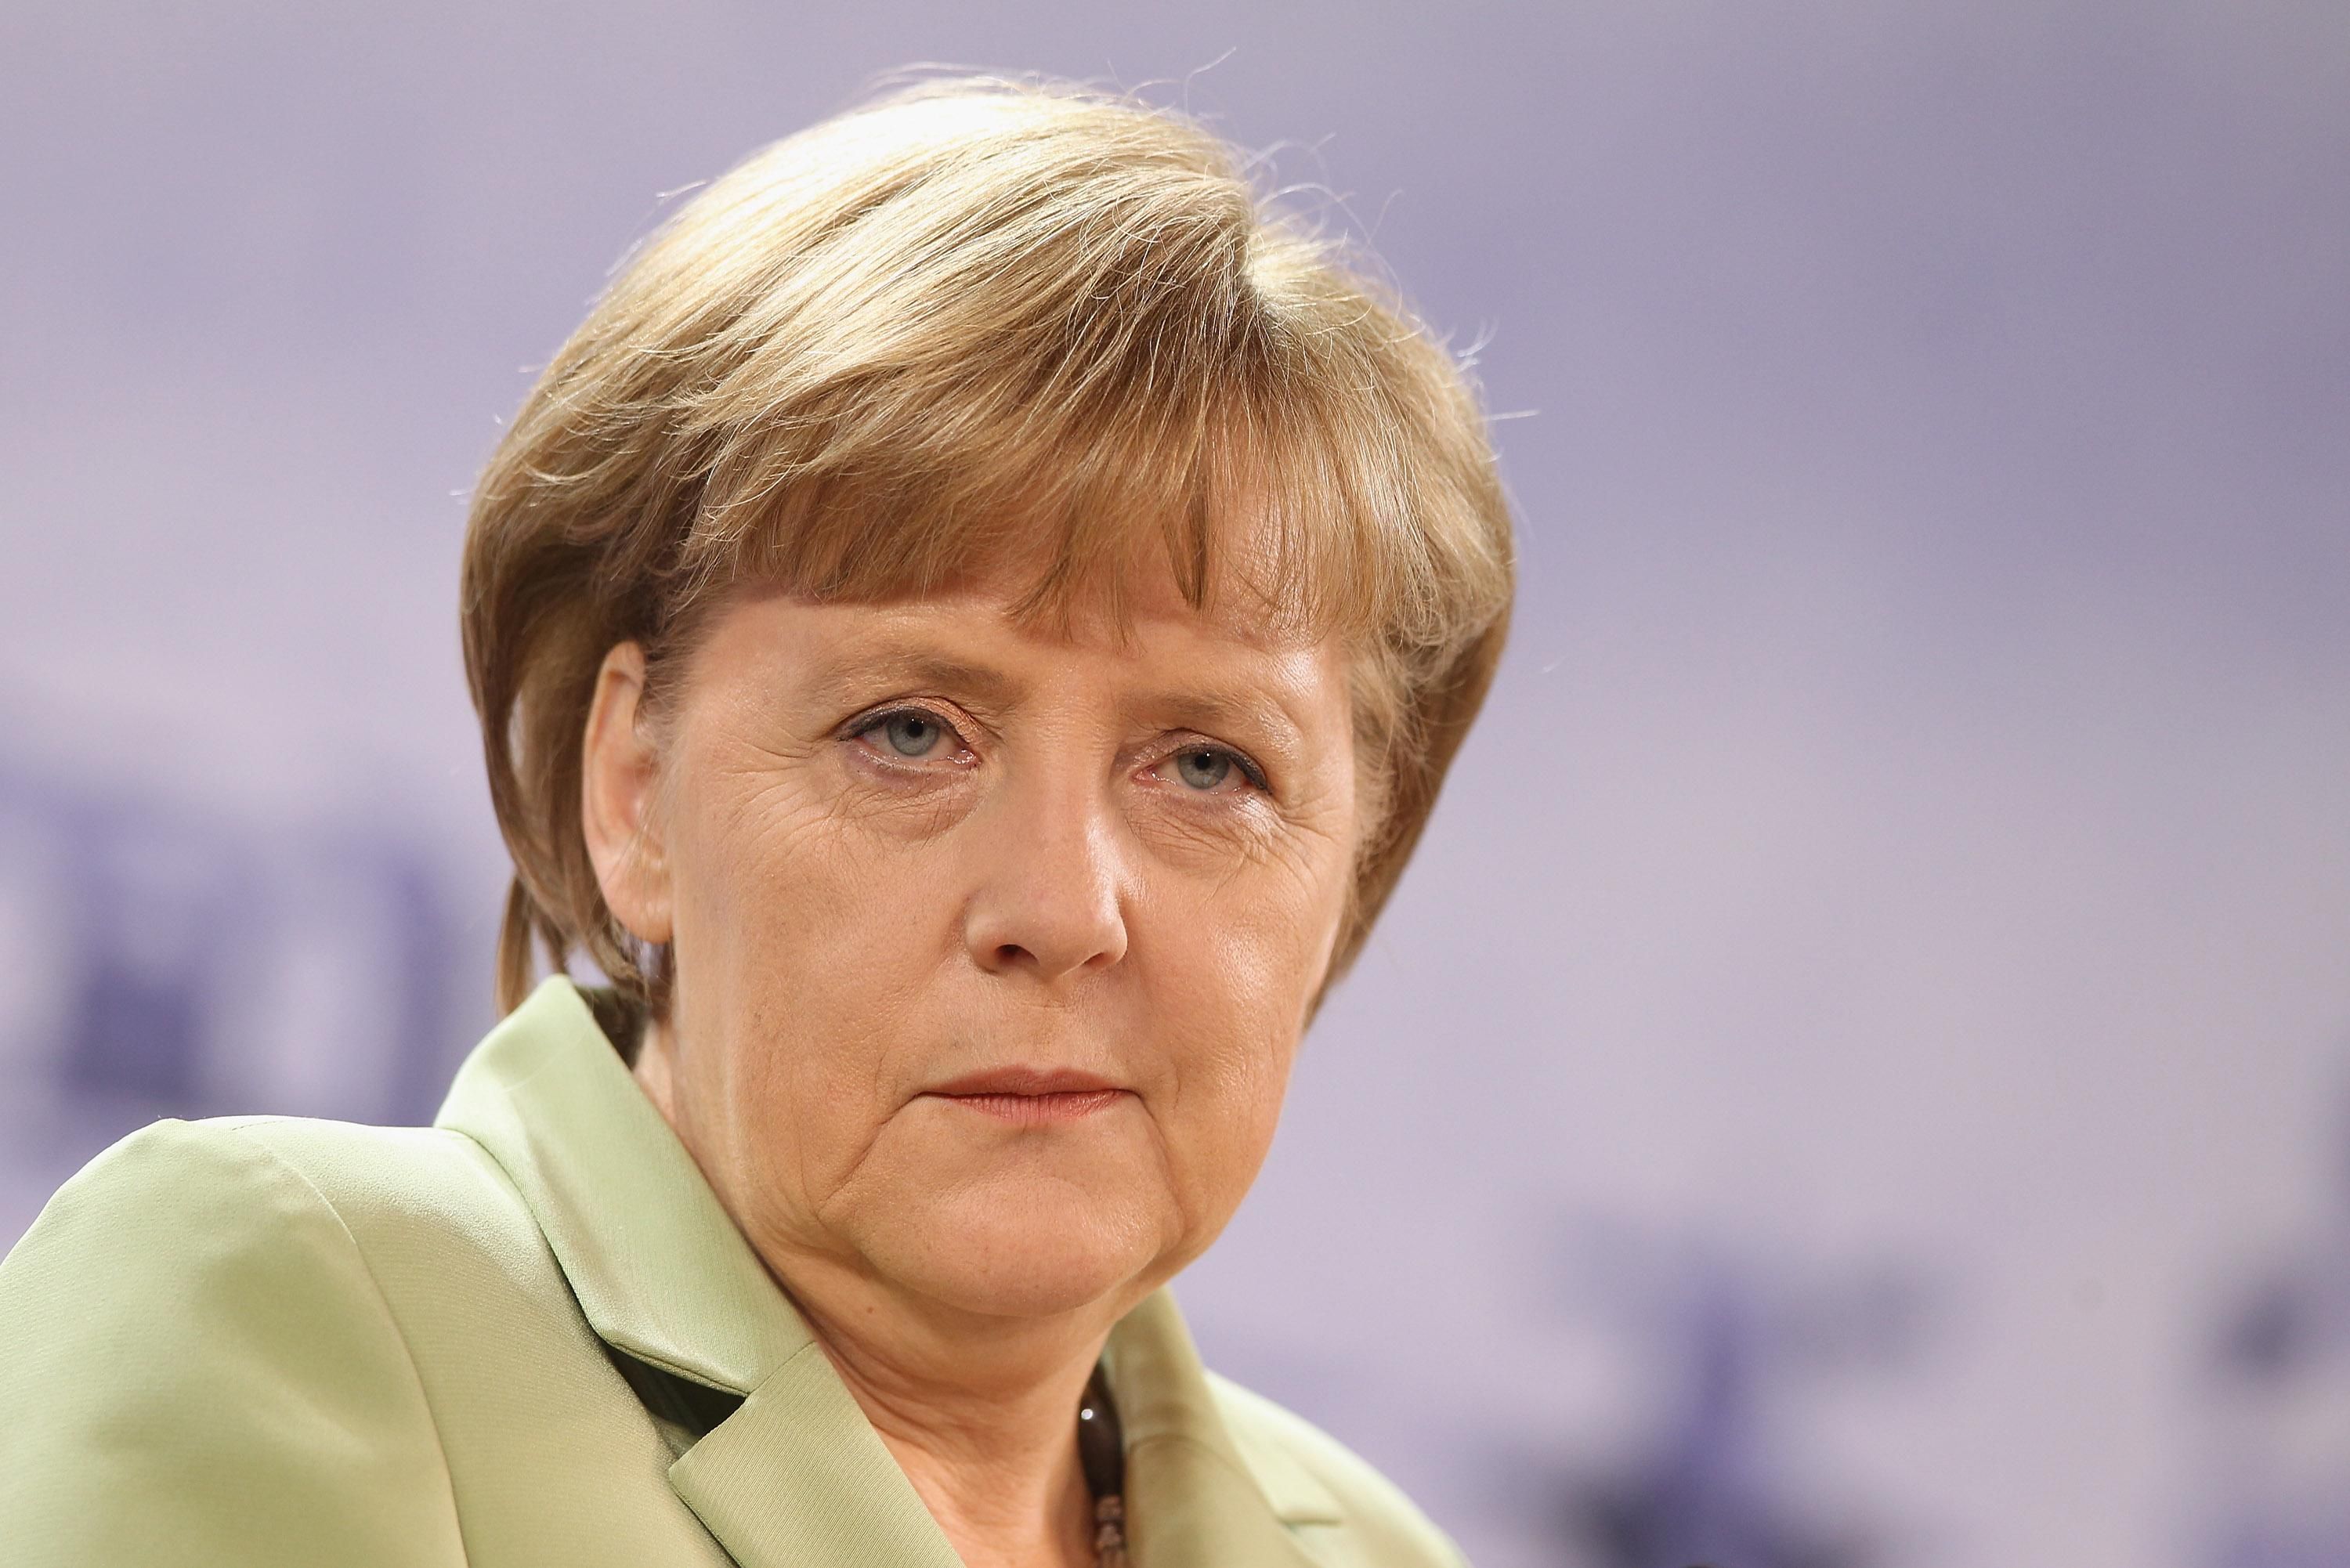 Гречкосійство по-німецьки: для чого насправді Меркель їздила в Київ - Новини росії - 24 Канал